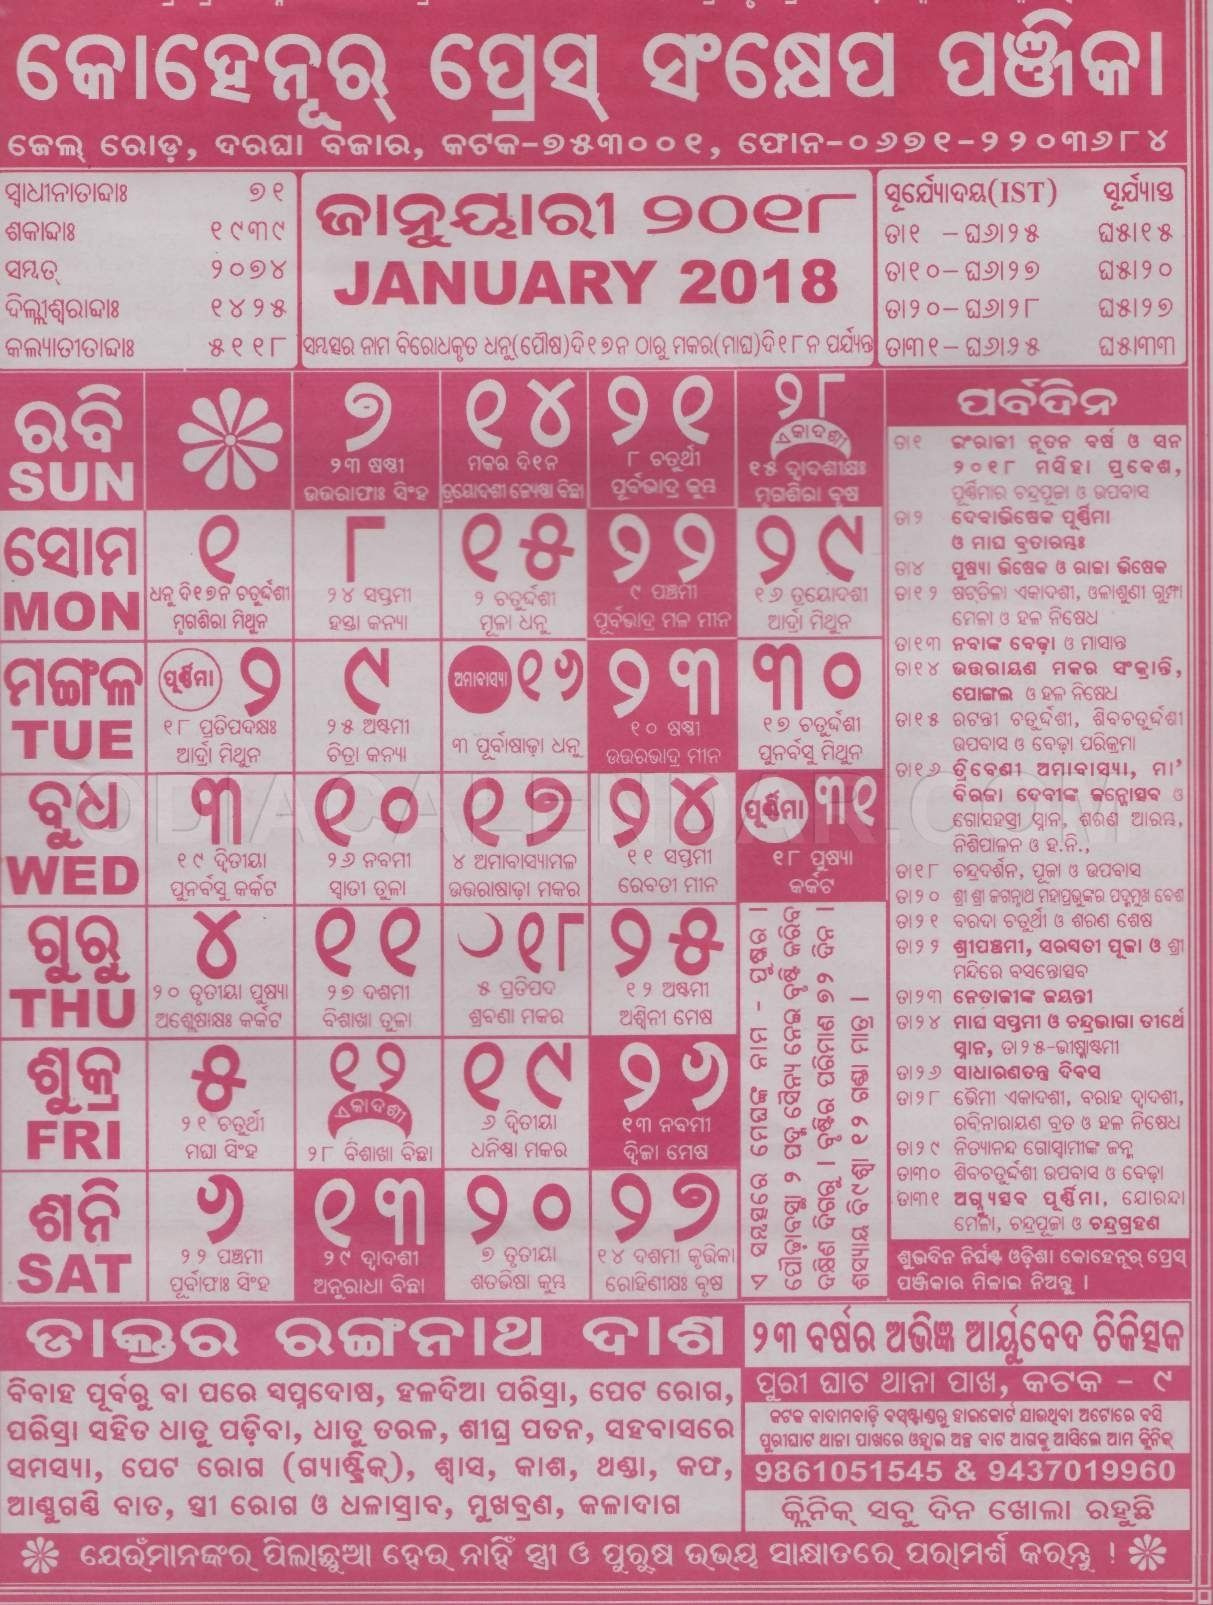 20+ Calendar 2021 Odia - Free Download Printable Calendar Odia Calendar December 2021